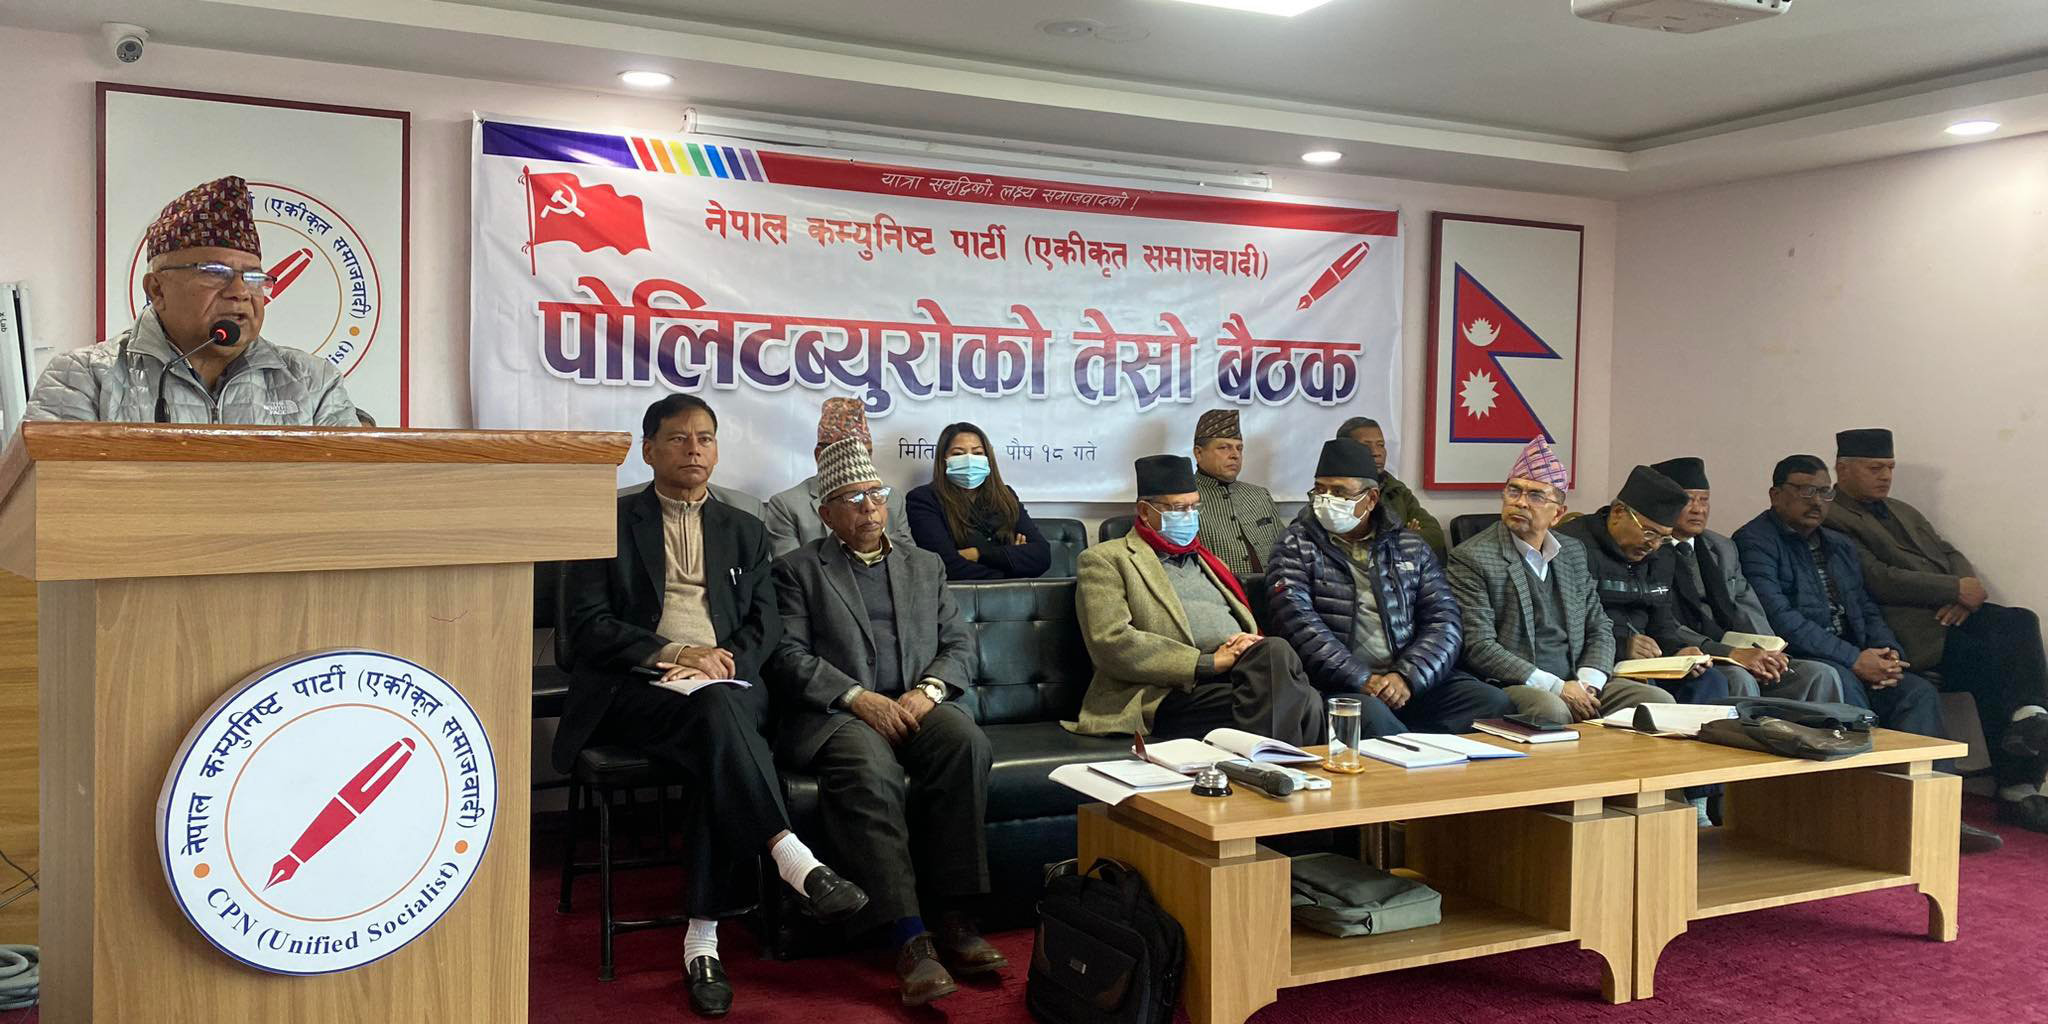 सत्ता गठबन्धनमा सहभागी हुँदैनौँ : माधव नेपाल